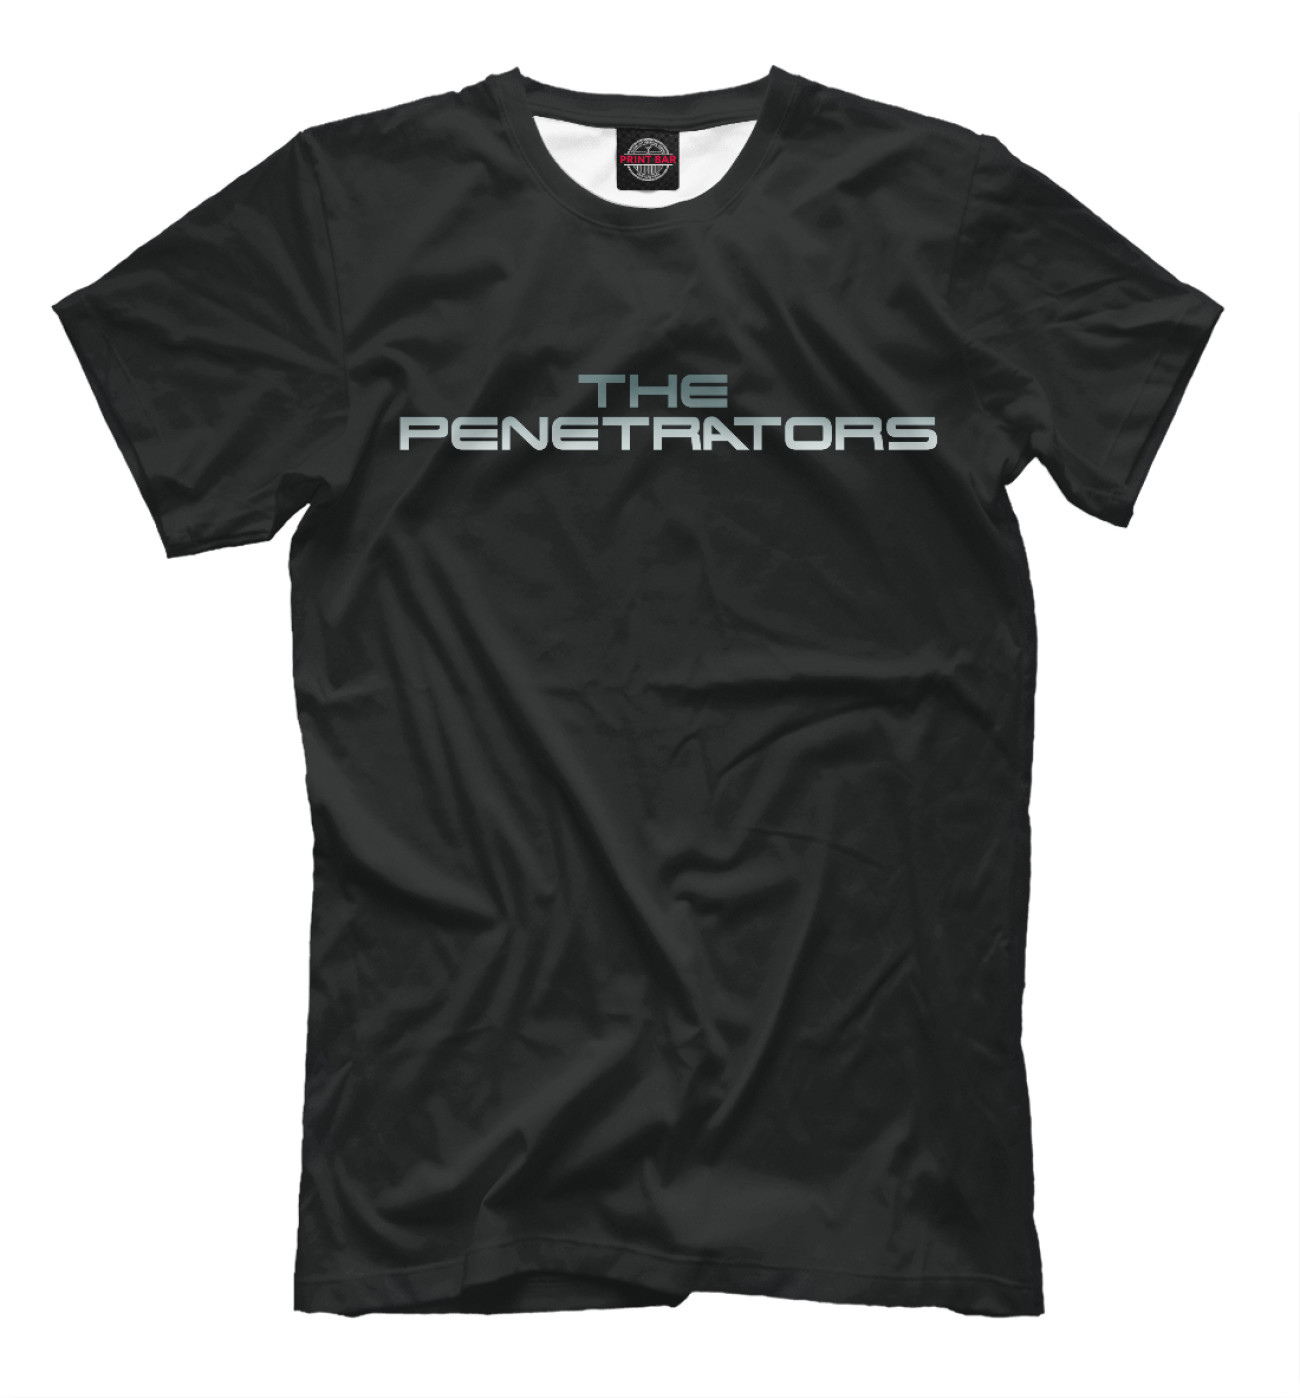 Мужская Футболка Kris The Penetrators, артикул: SKM-945034-fut-2